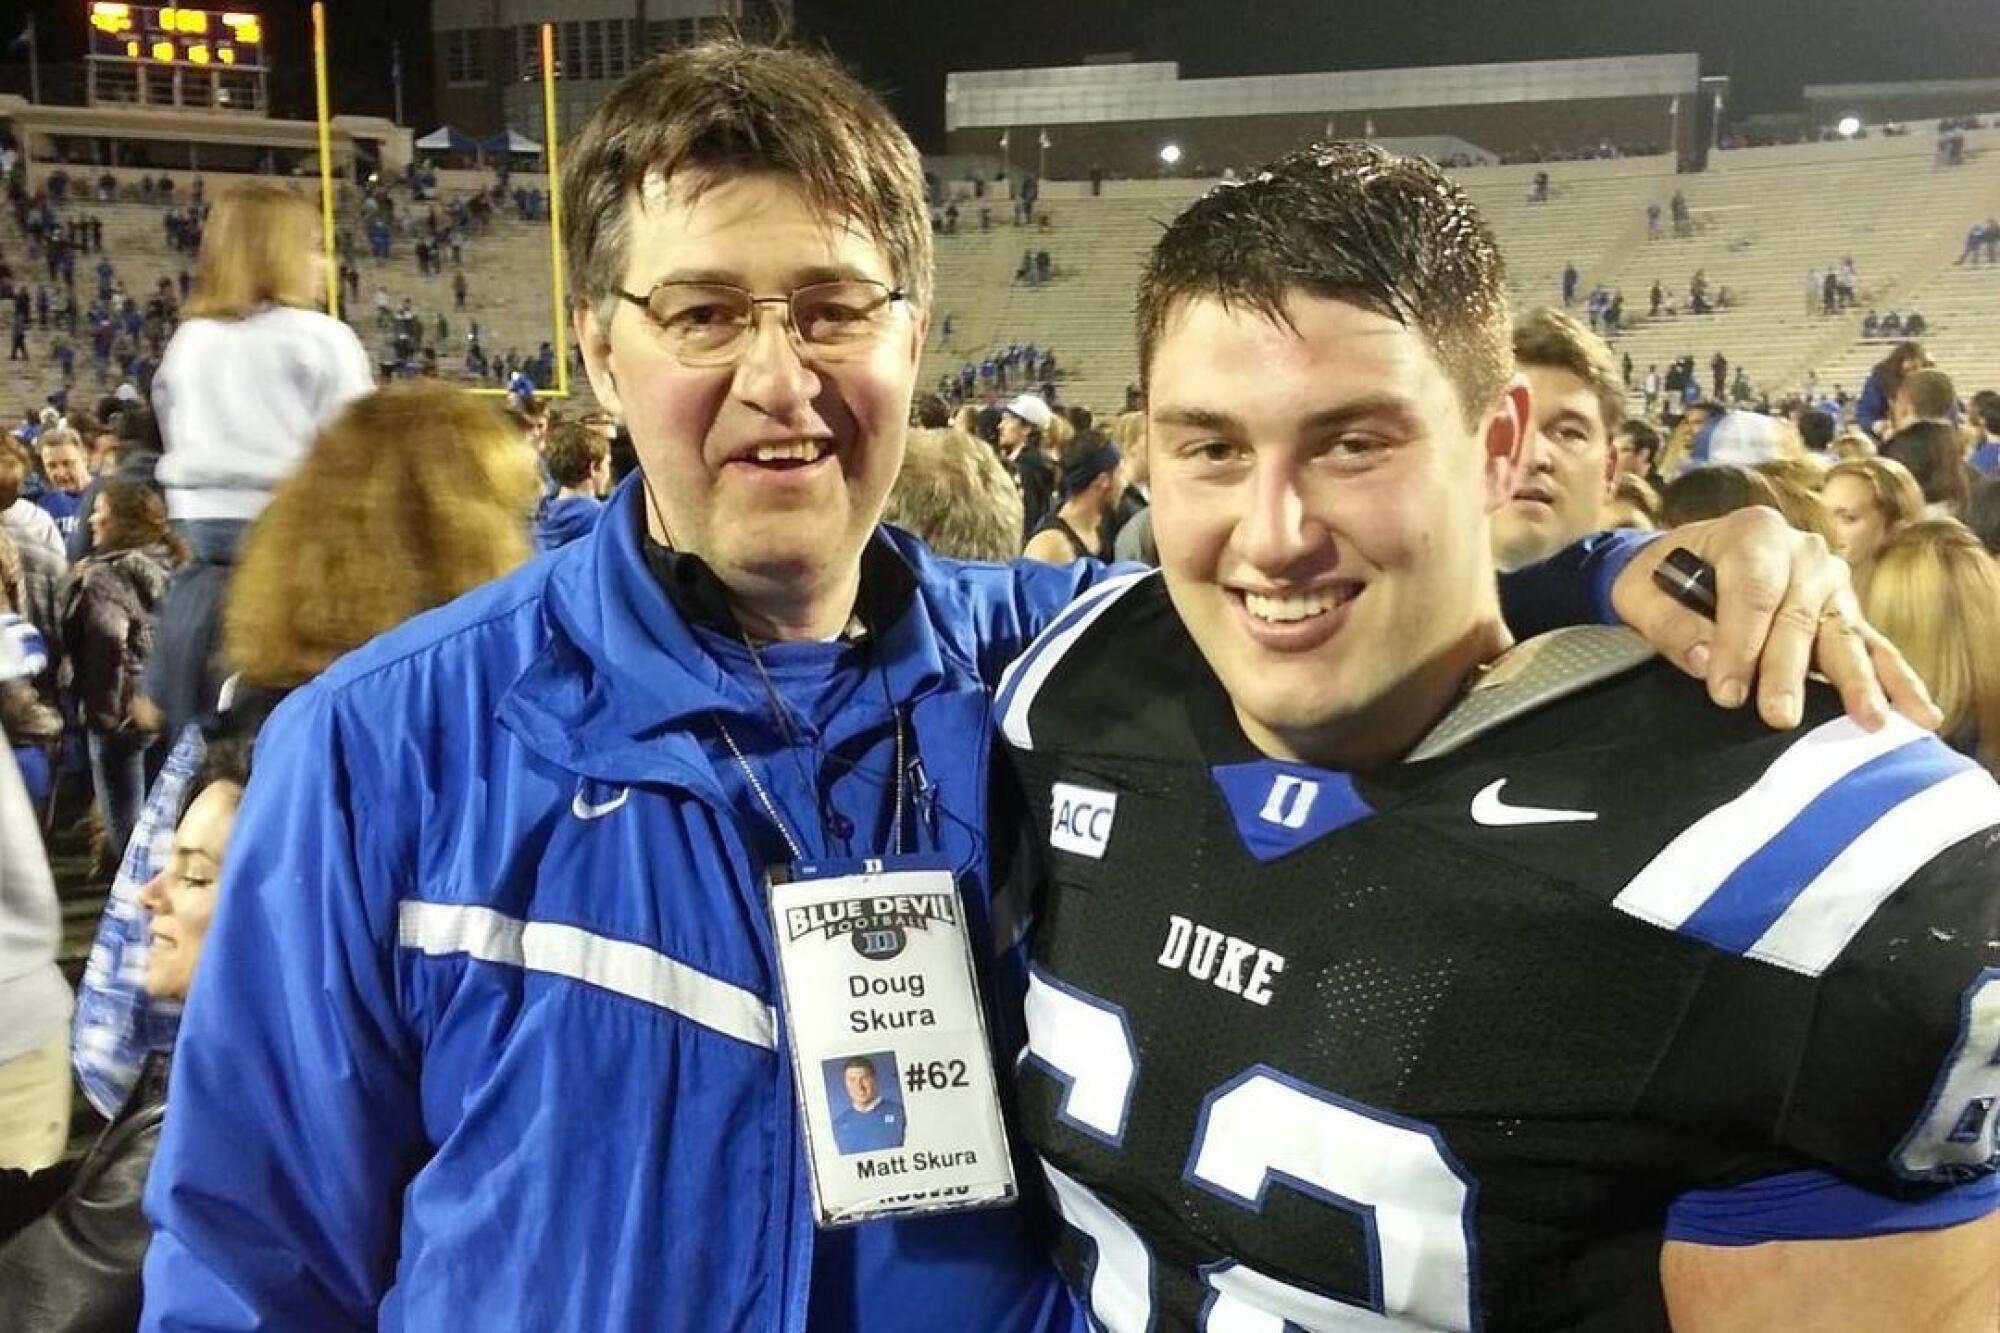 Doug Skura embraces his son, Matt, after a Duke football game. Matt is wearing his Duke football uniform.